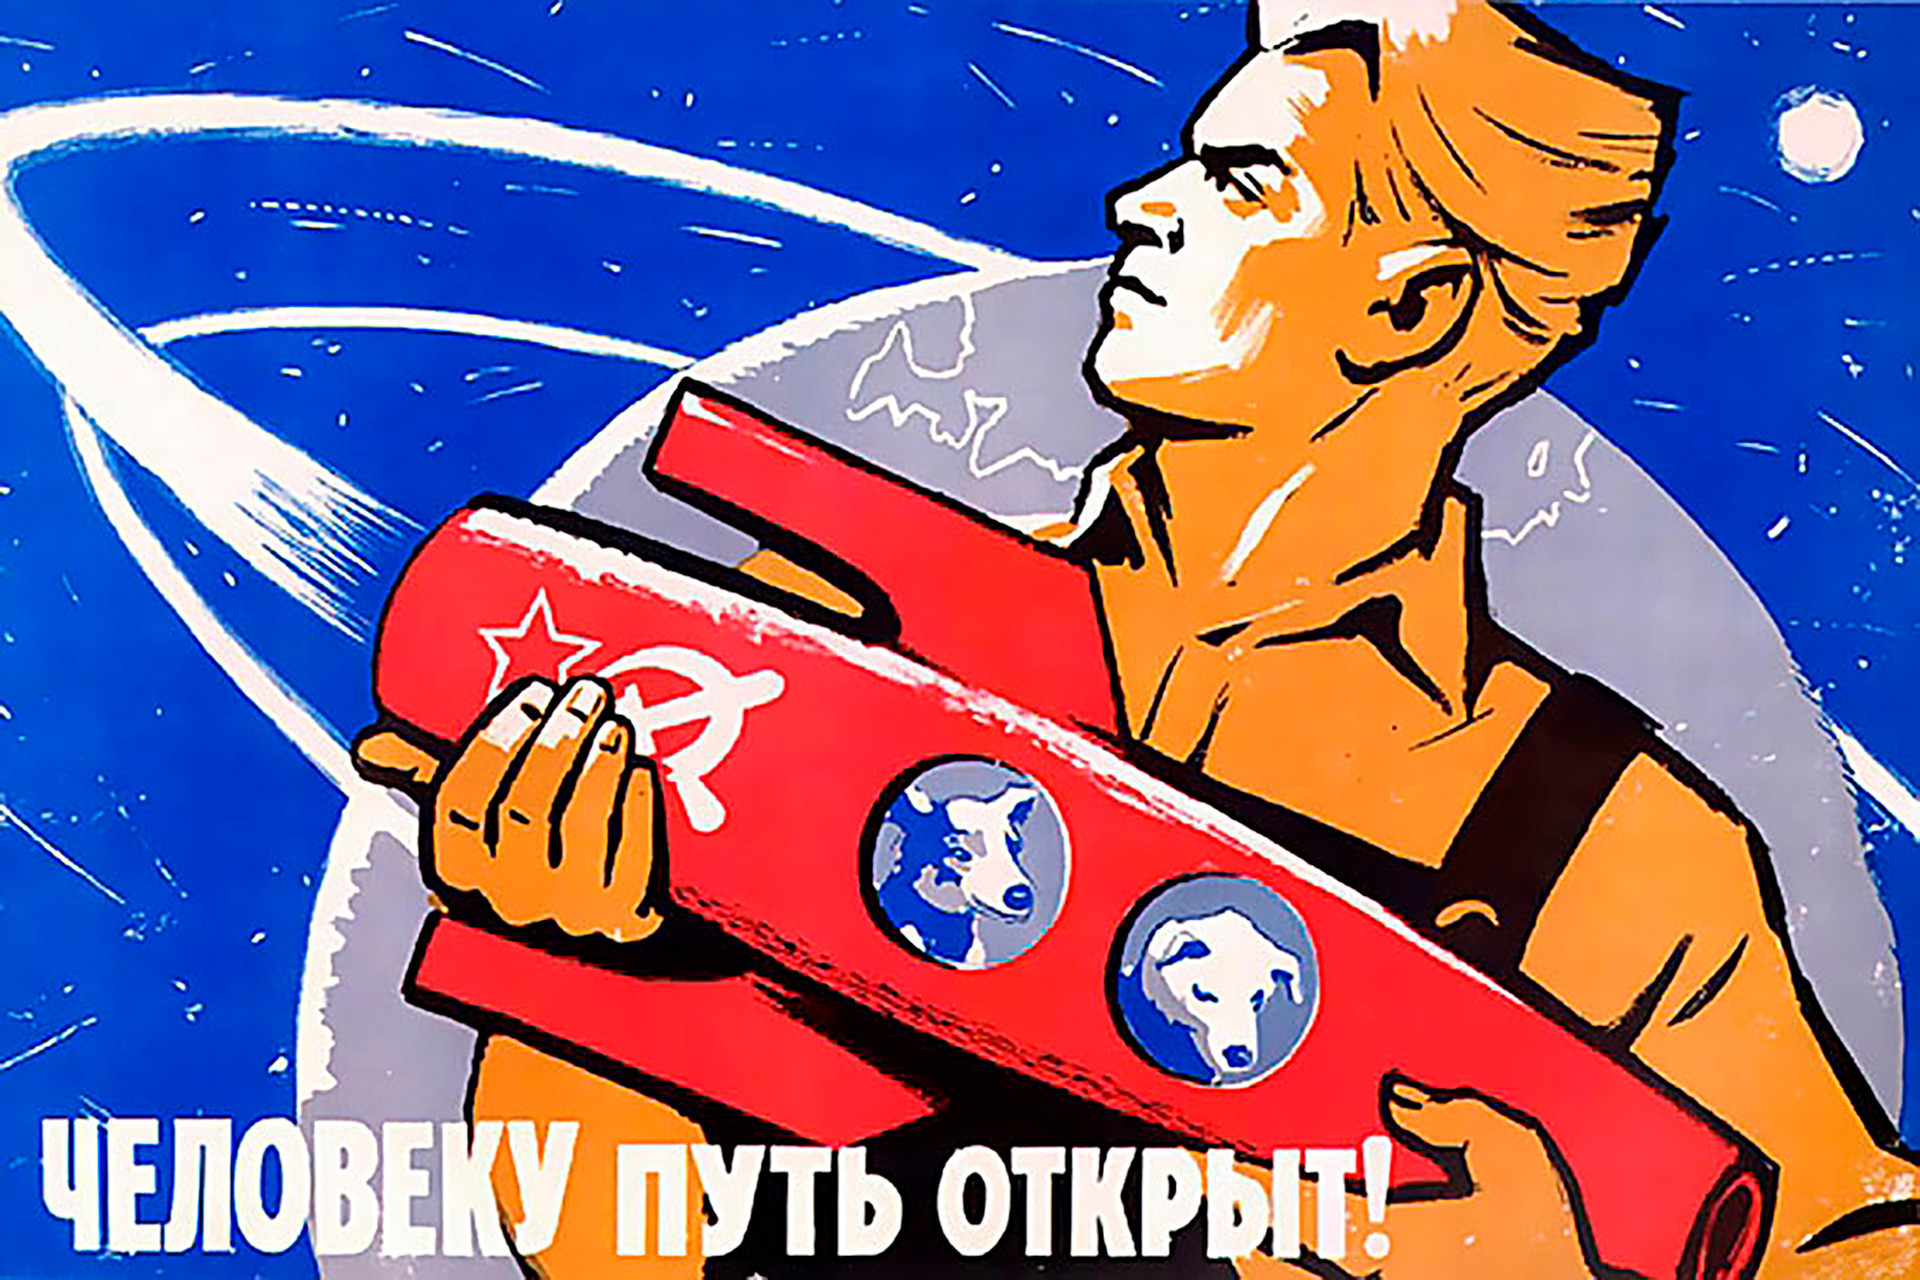 Советский человек плакат. Советские плакаты. Советские космические плакаты. Советские лозунги о космосе. Человеку путь открыт Советский плакат.